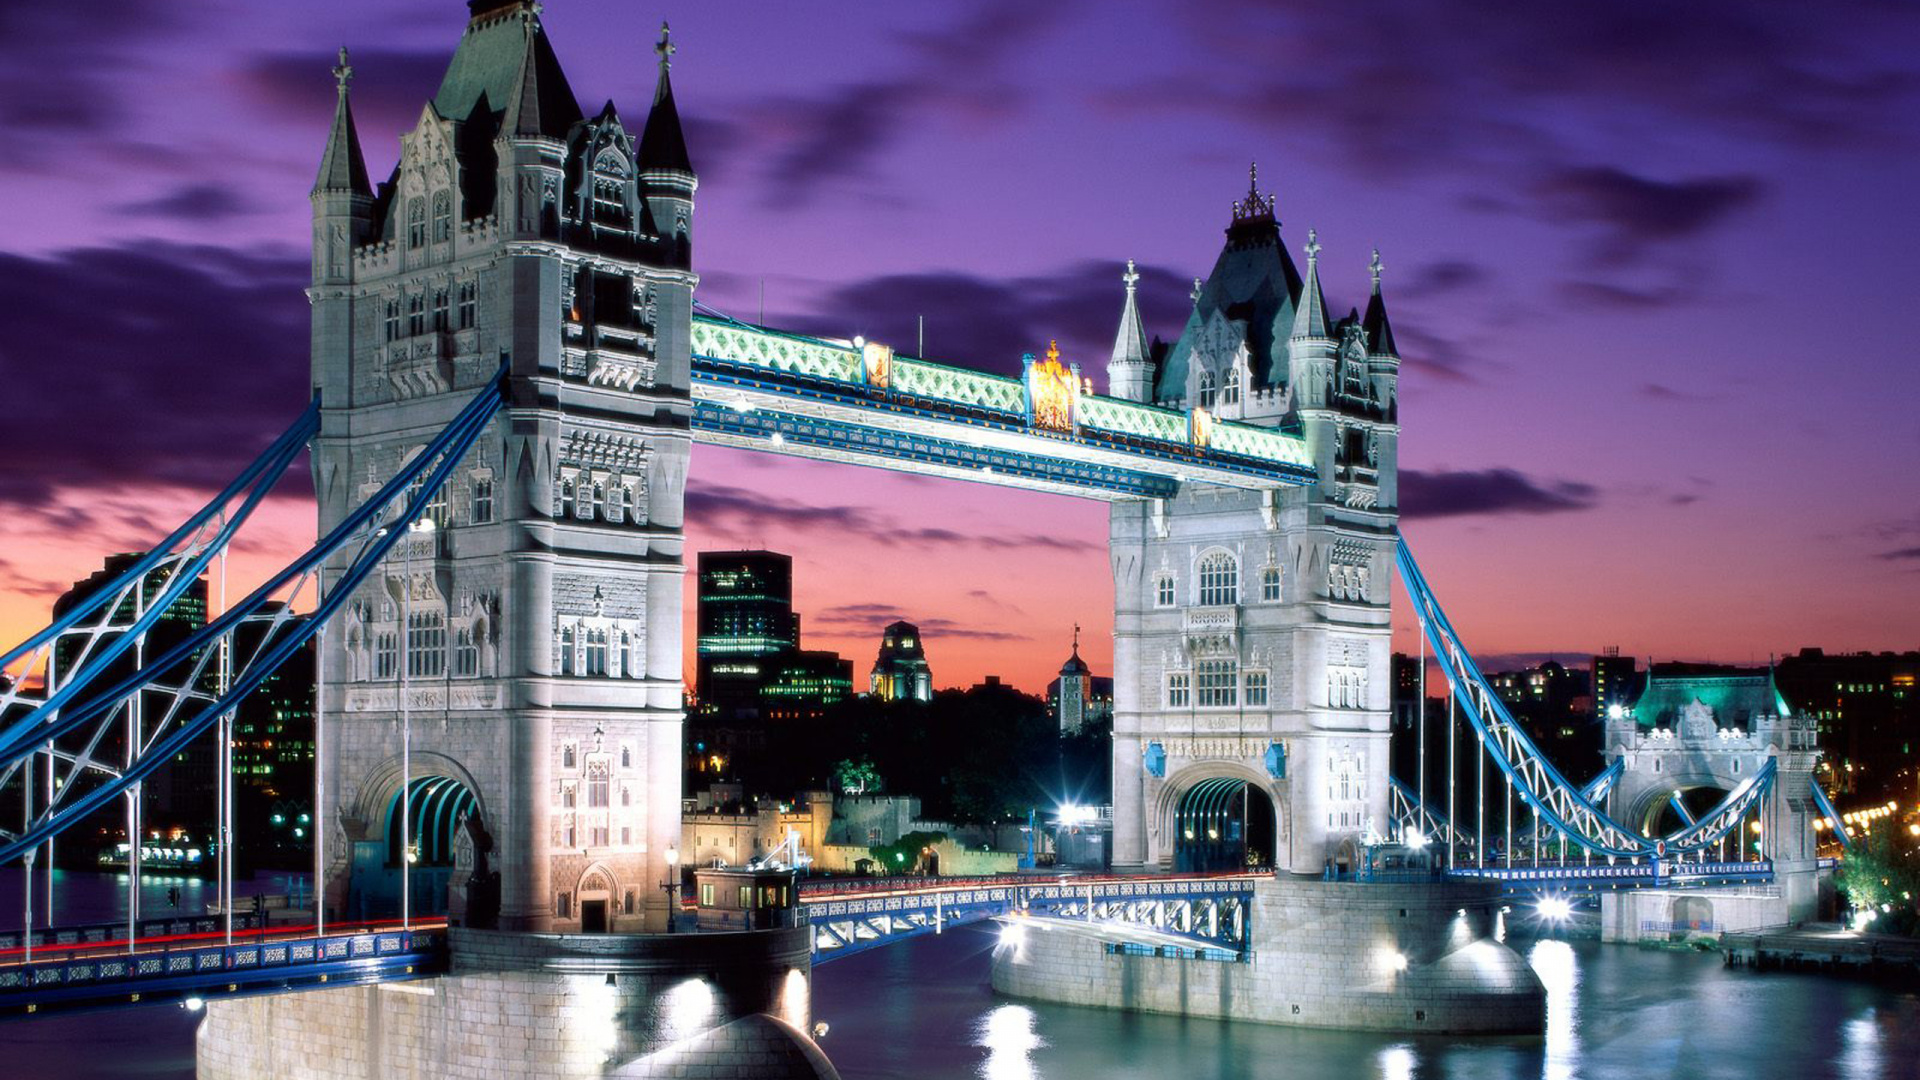 塔桥, 泰晤士河, 伦敦塔, 伦敦桥, 里程碑 壁纸 1920x1080 允许